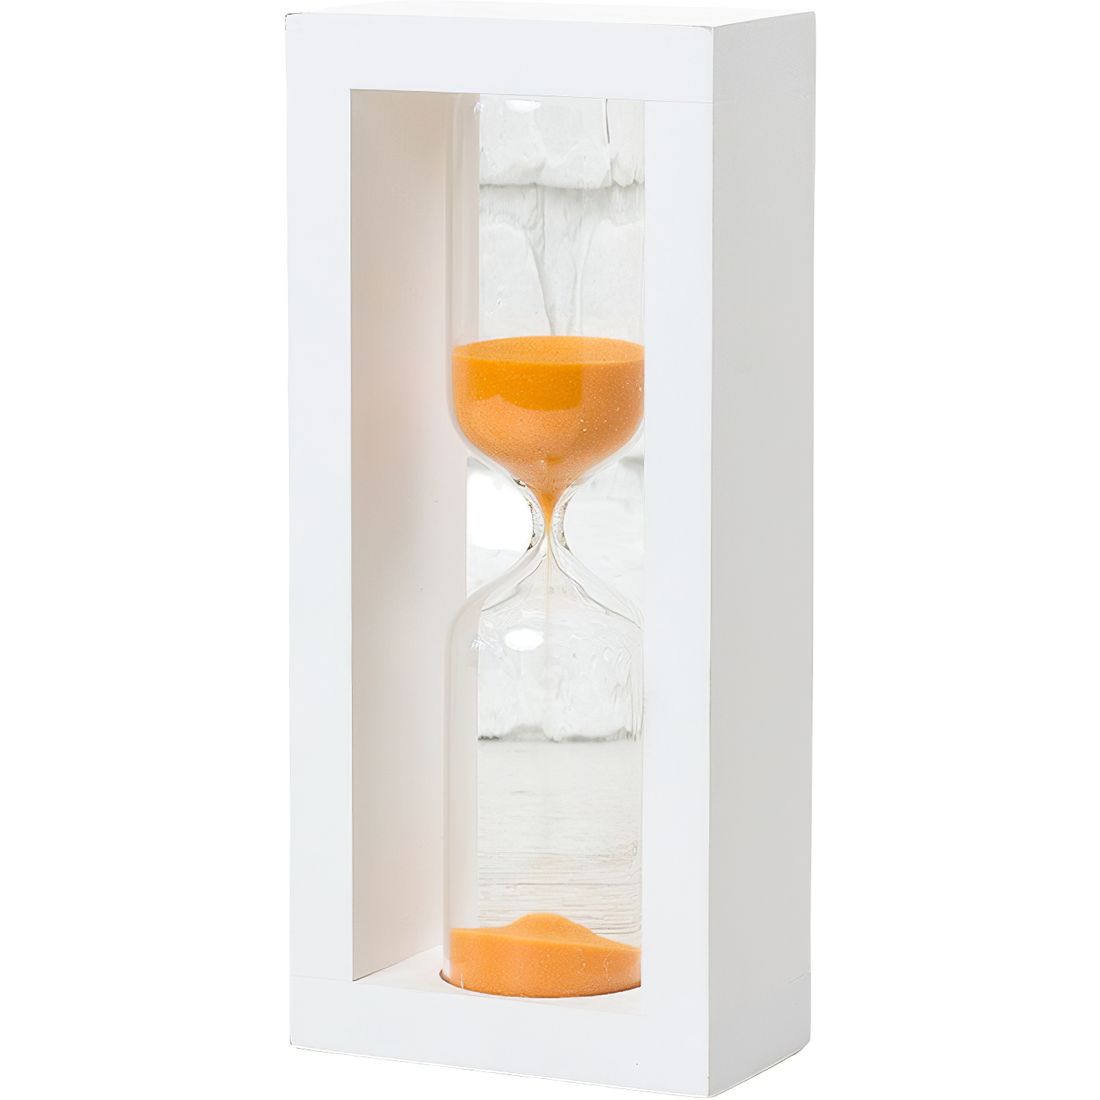 Песочные часы Склоприлад 4-28, 15 минут песок оранжевый белый (300595) - фото 1